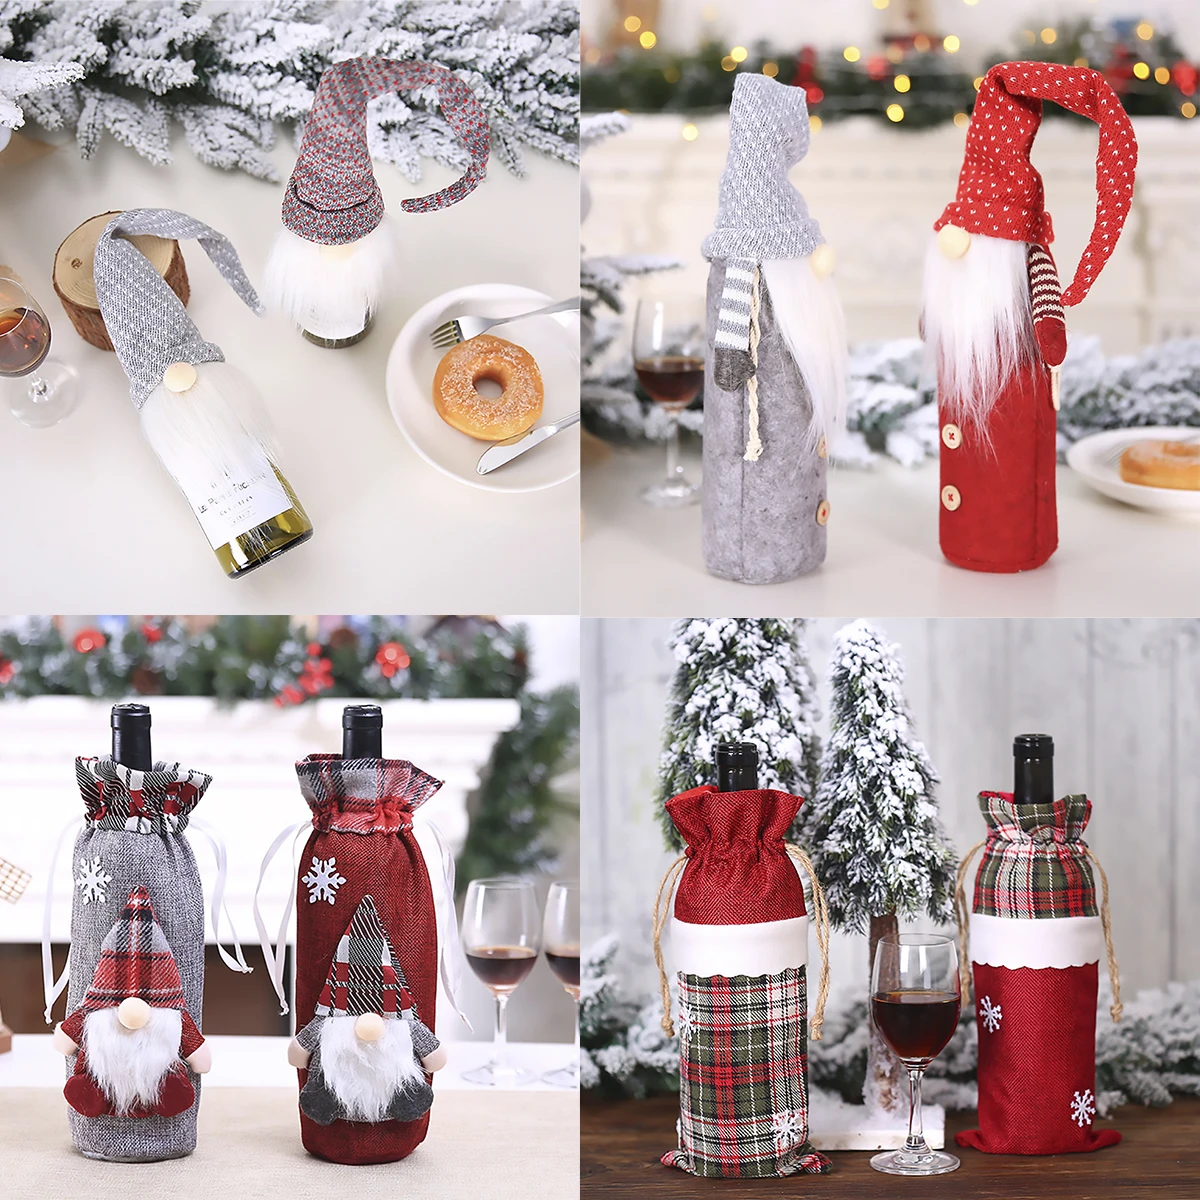 QIFU Санта Клаус, лось, снеговик, Рождественская Крышка для бутылки вина, Рождественский Декор для дома, Navidad, натальные подарки, год